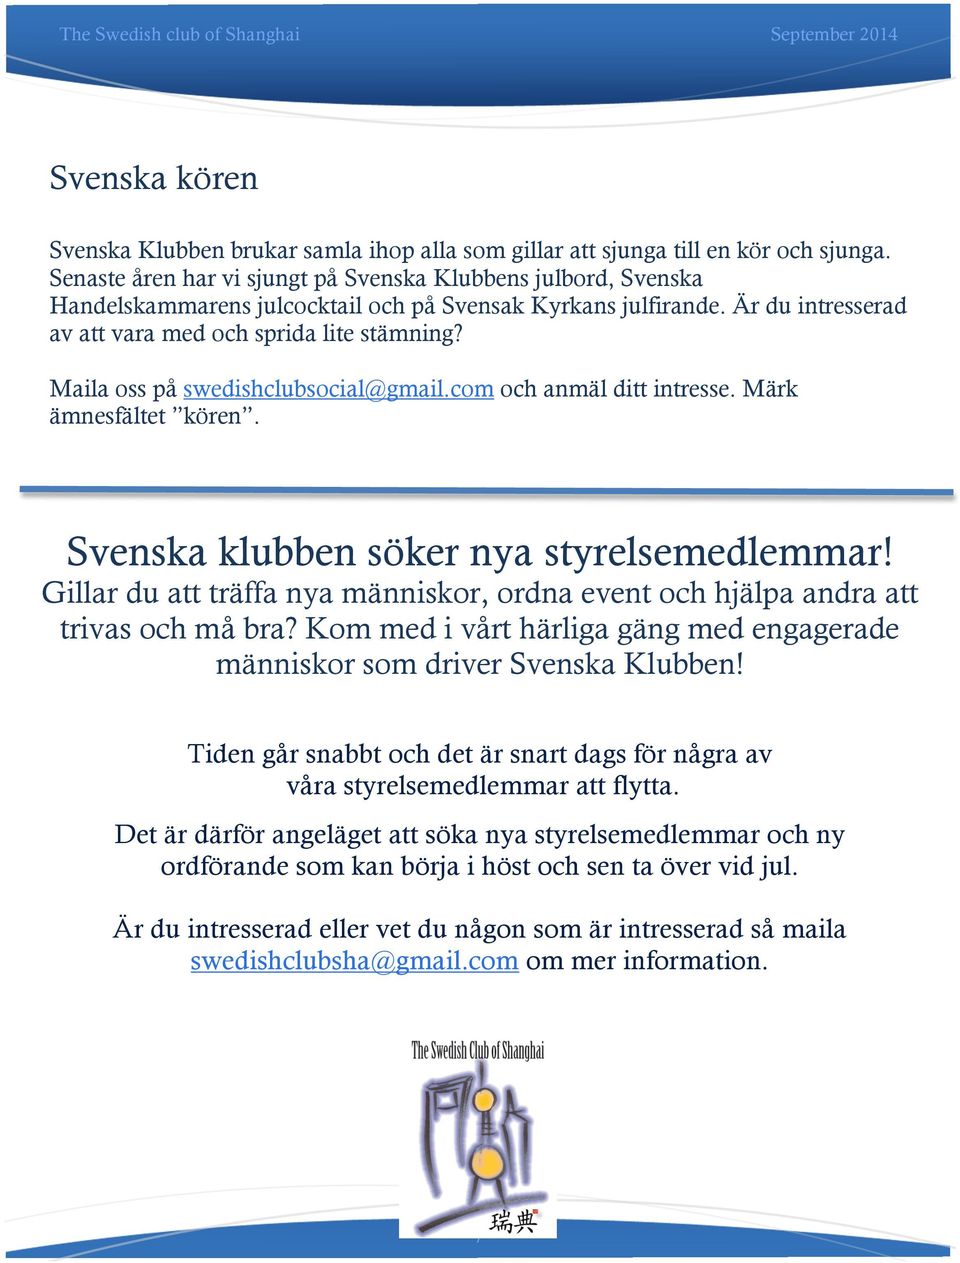 Maila oss på swedishclubsocial@gmail.com och anmäl ditt intresse. Märk ämnesfältet kören. Svenska klubben söker nya styrelsemedlemmar!